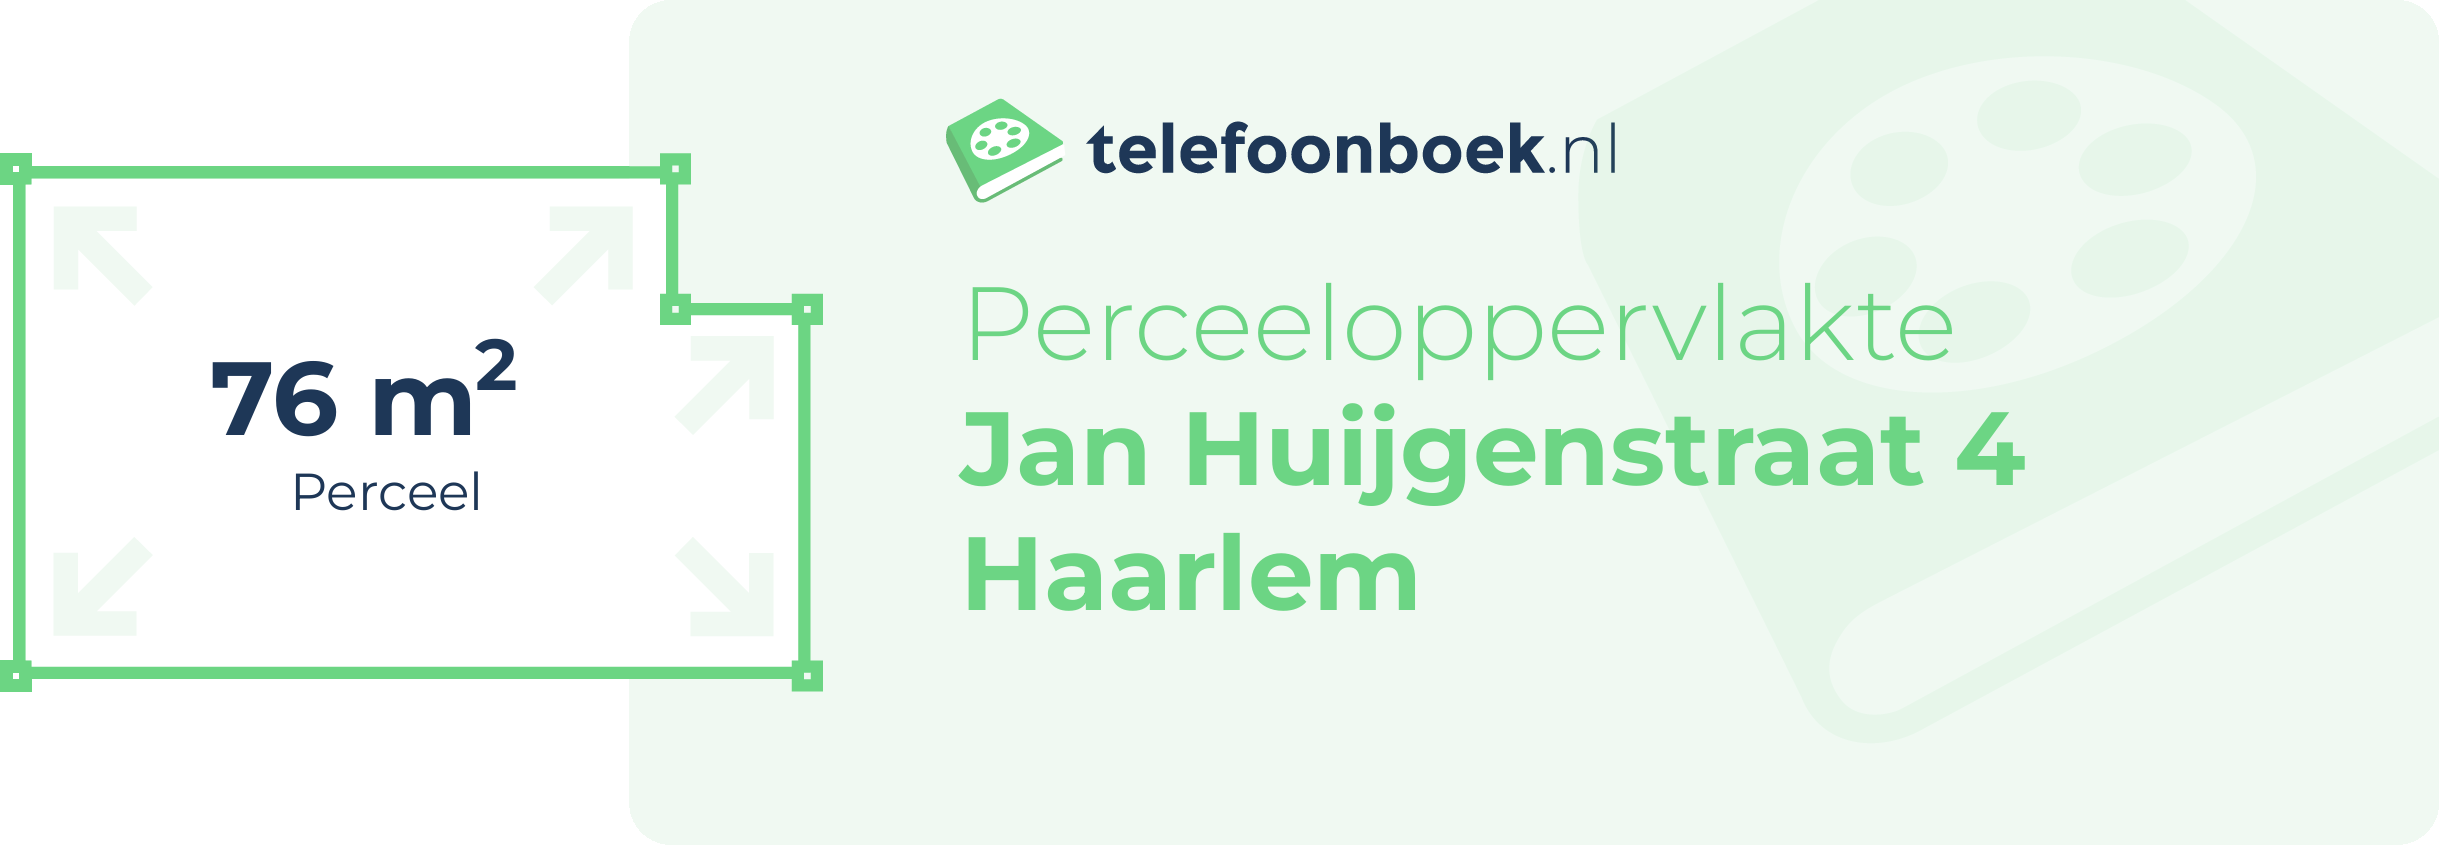 Perceeloppervlakte Jan Huijgenstraat 4 Haarlem